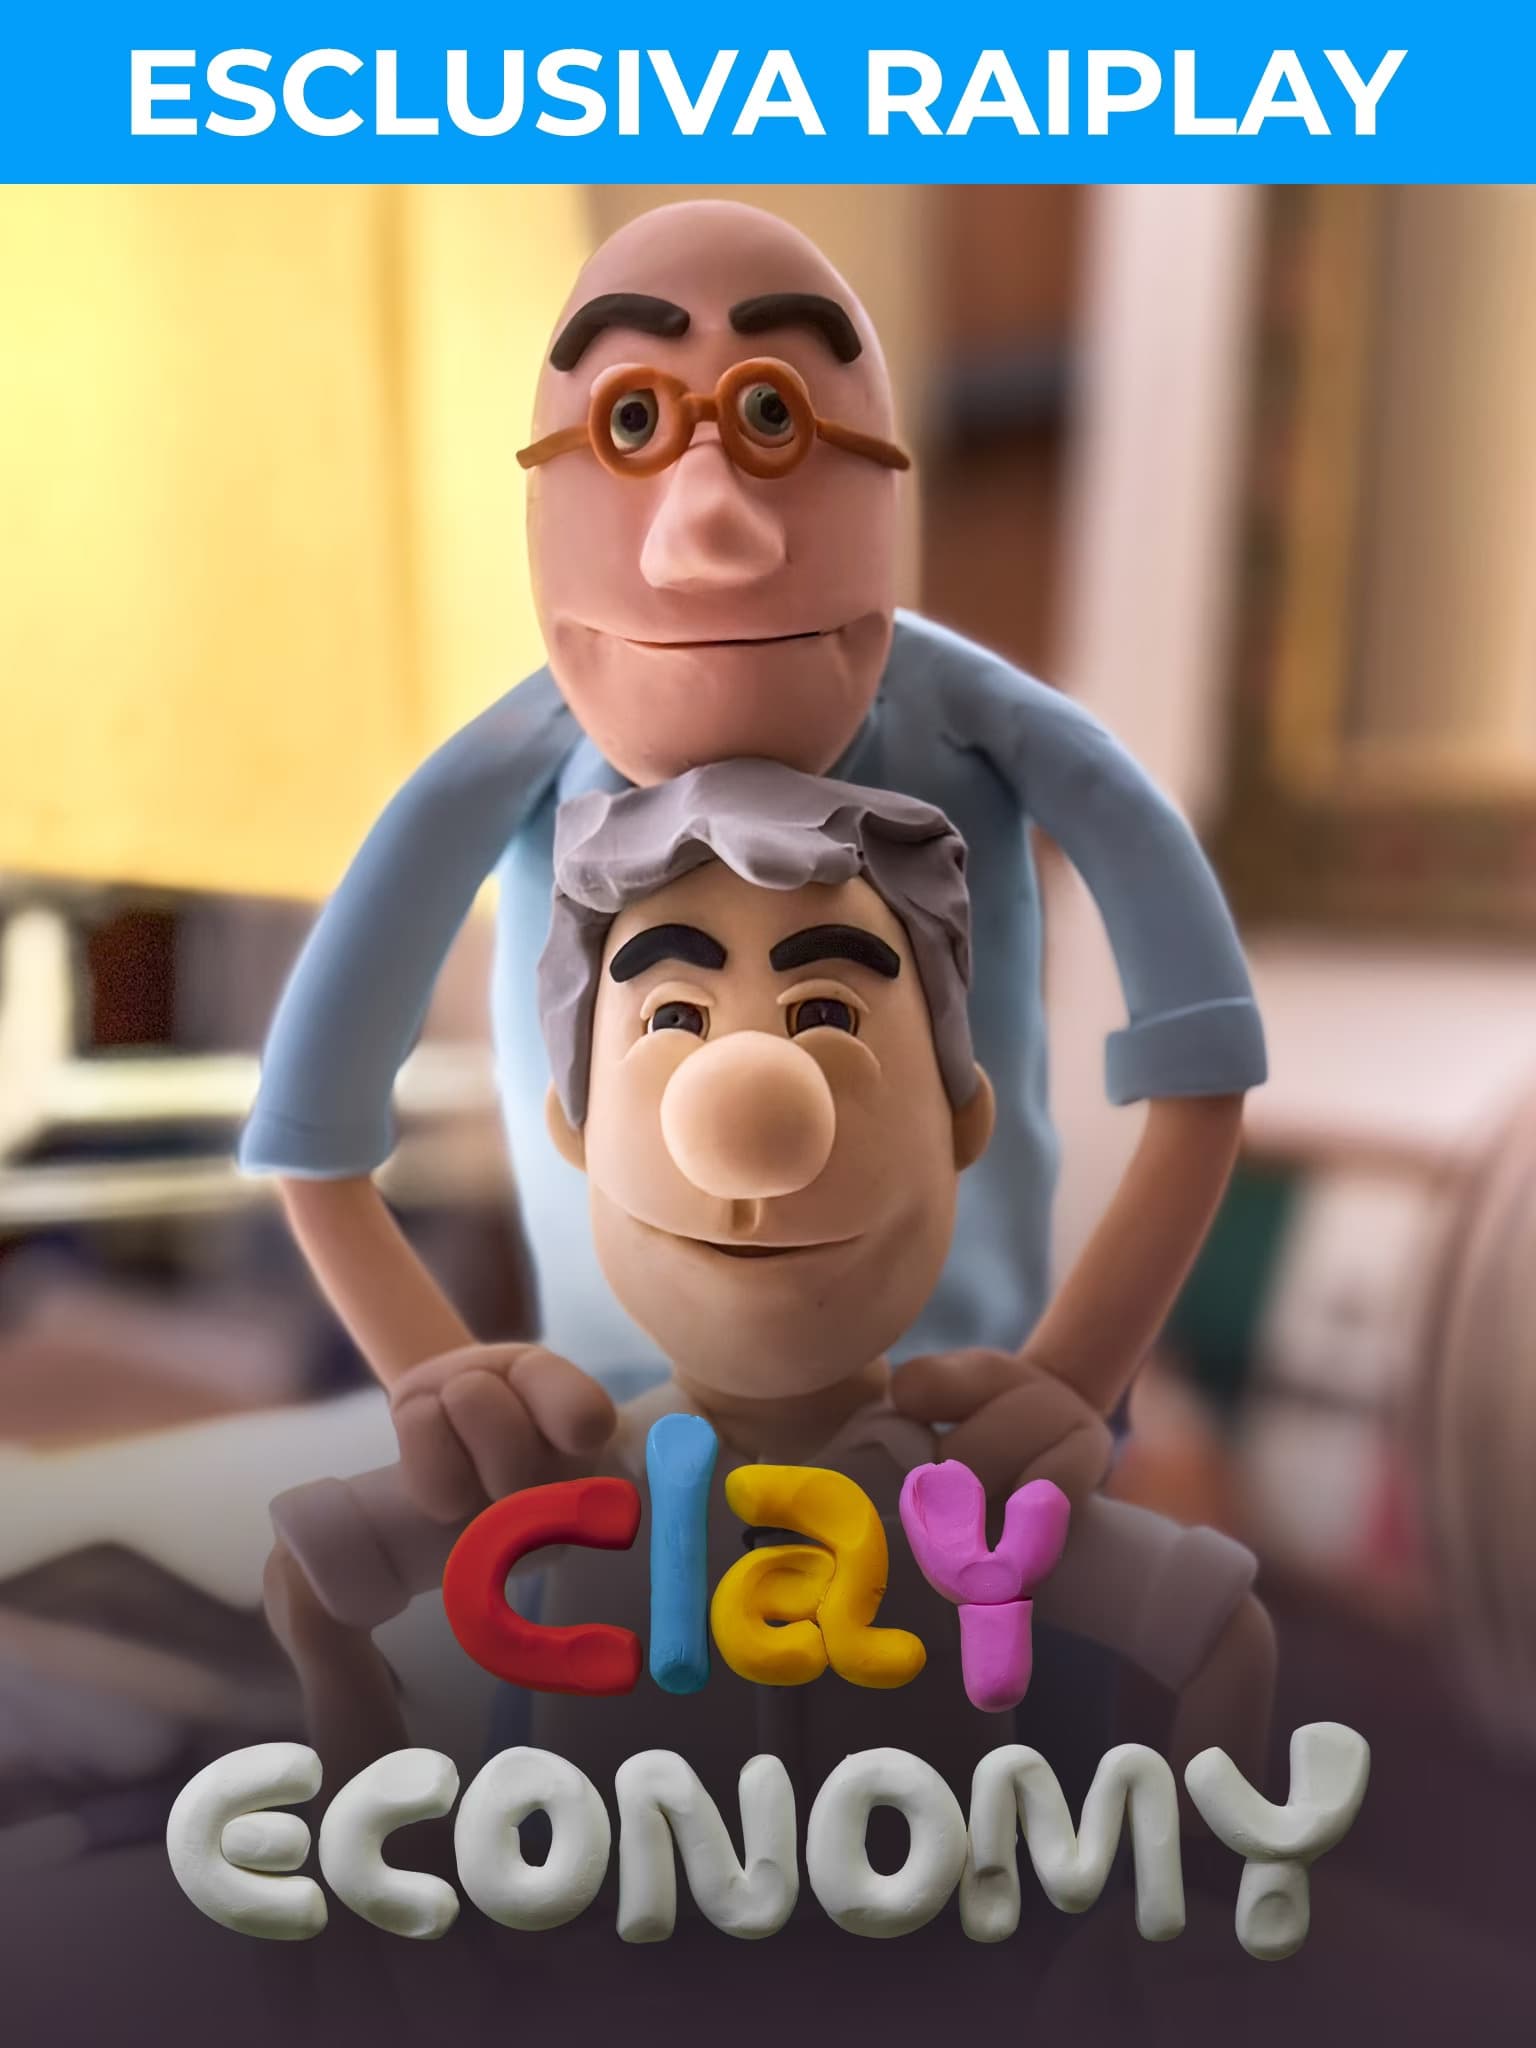 Clay Economy